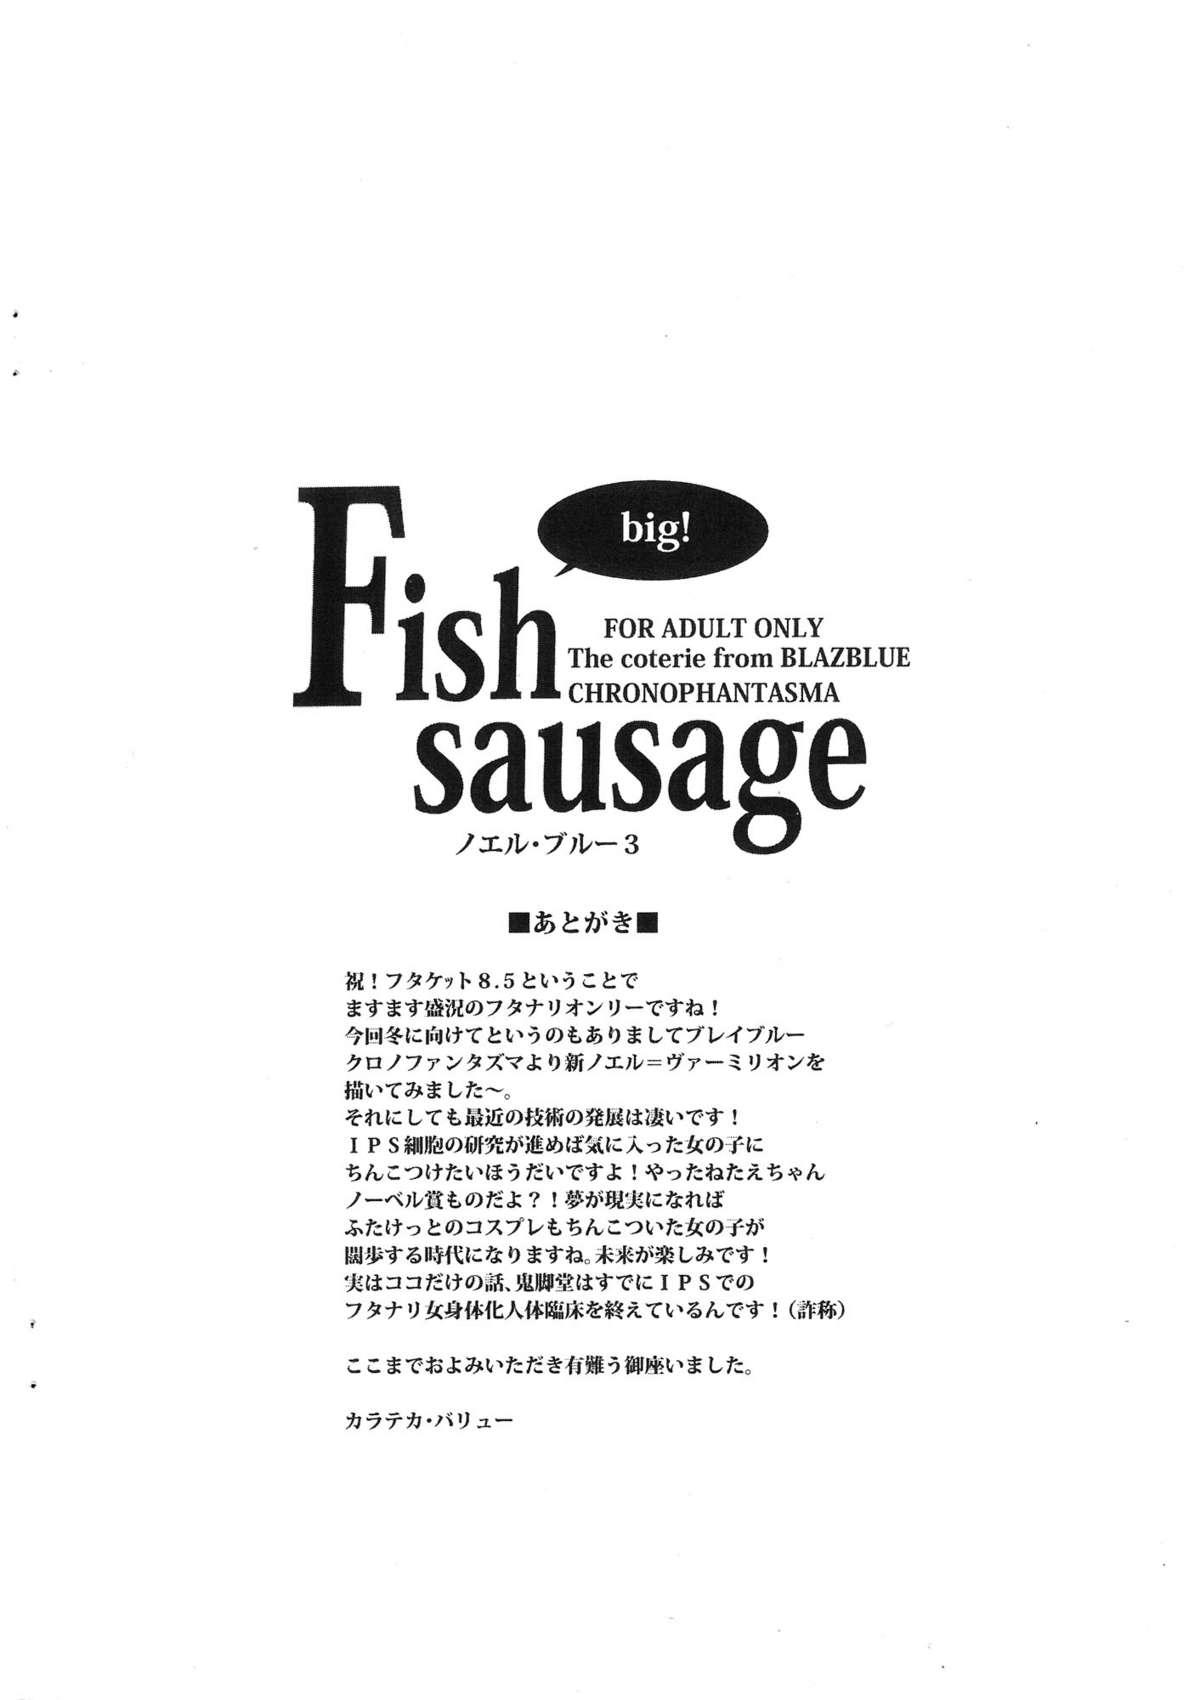 Fish sausage 6